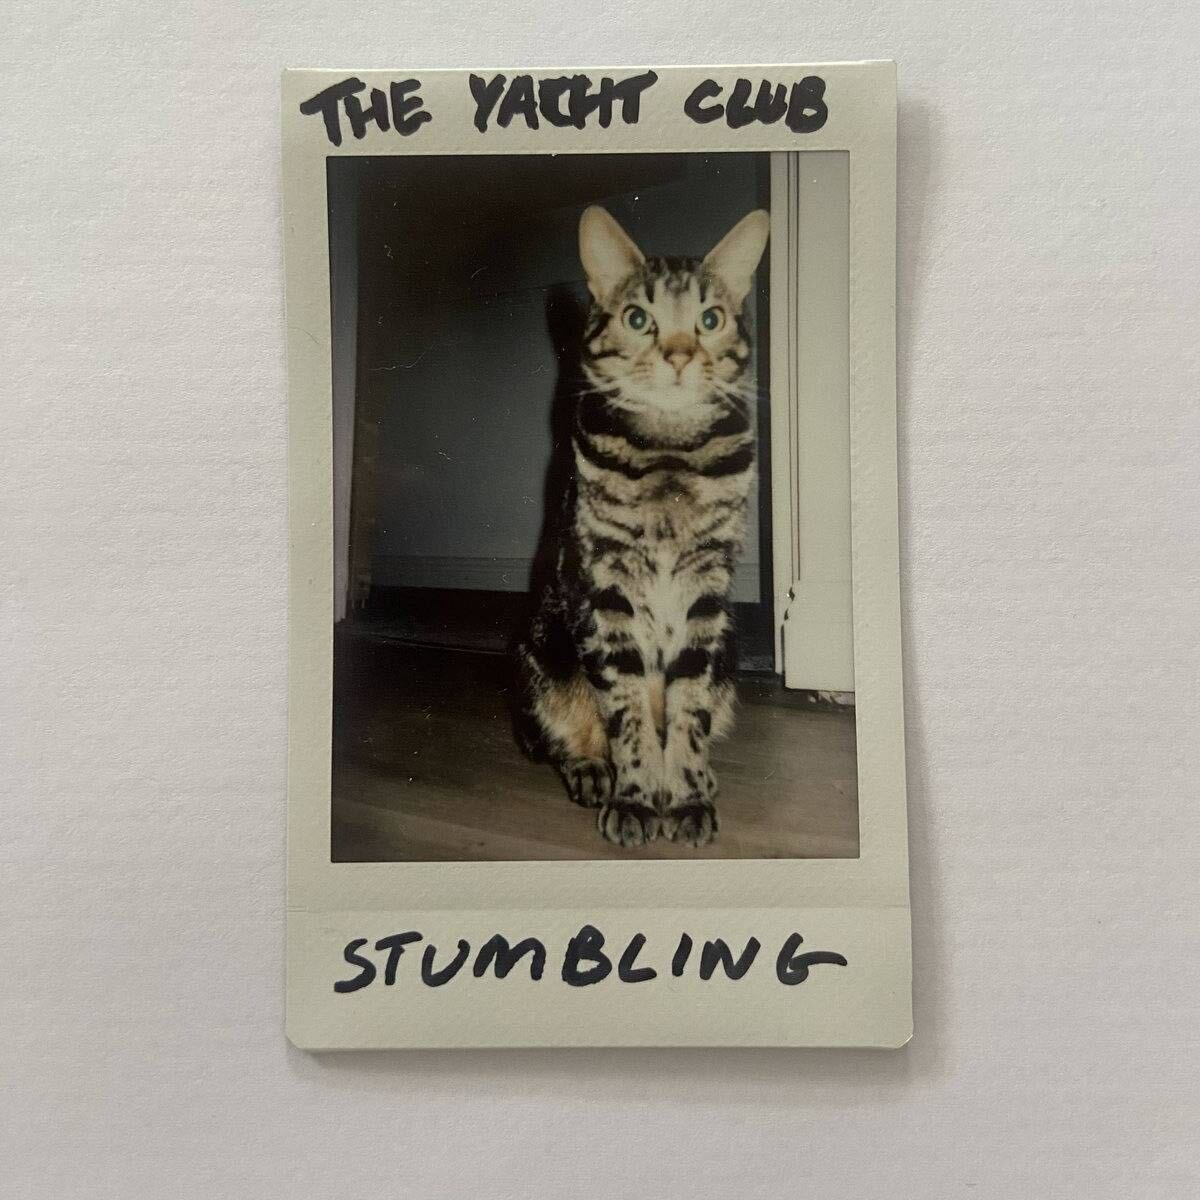 Stumbling - The Yacht Club - Drums / Keys